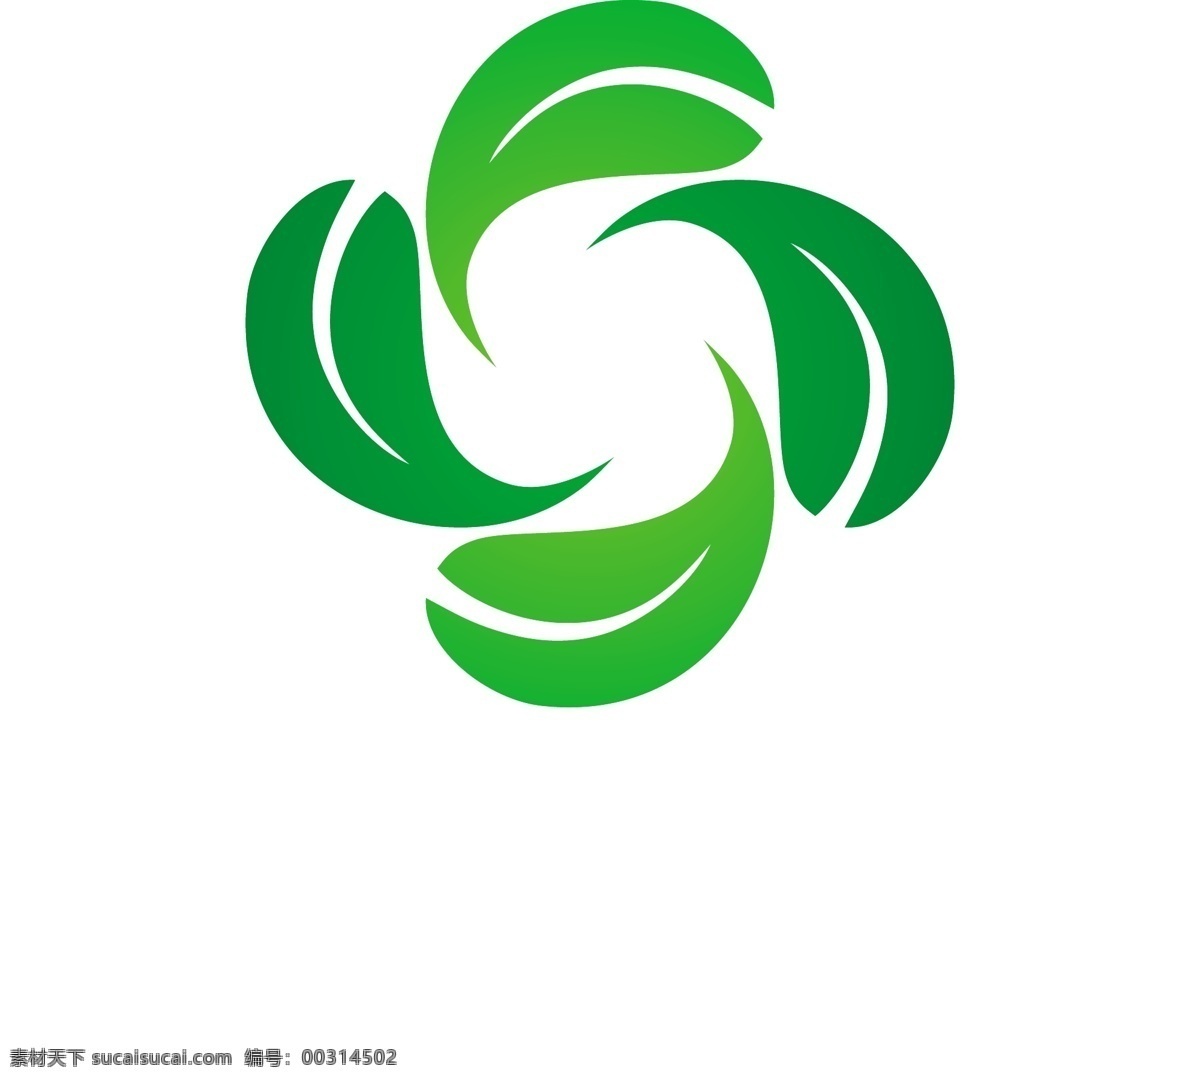 四 叶子 标志 商业圈 自然 绿色营销 形状 叶 生态 企业 公司 品牌 现代 企业形象 符号 标识 商业标识